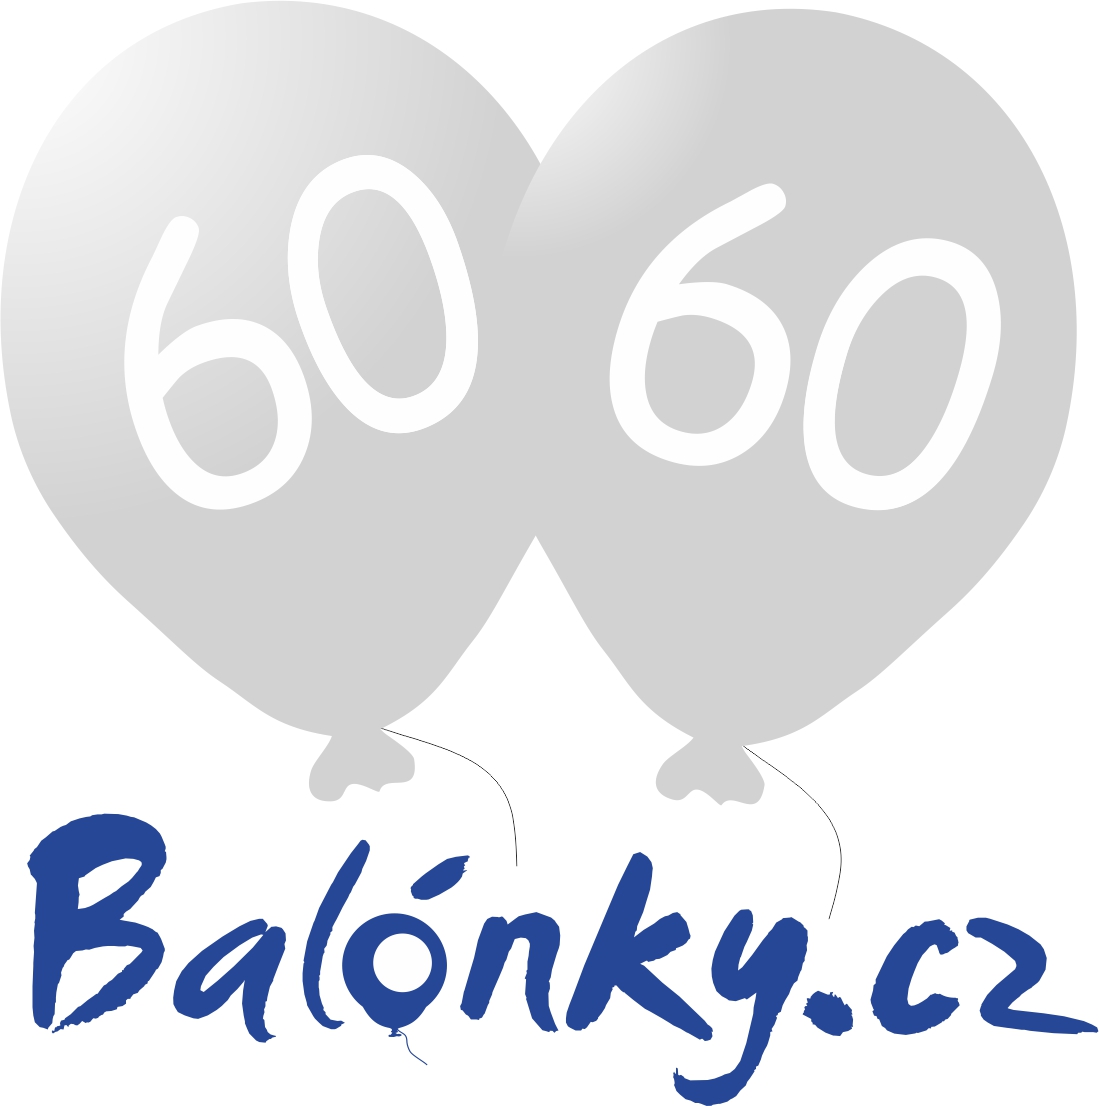 Narozeninové balónky 60 stříbrné 